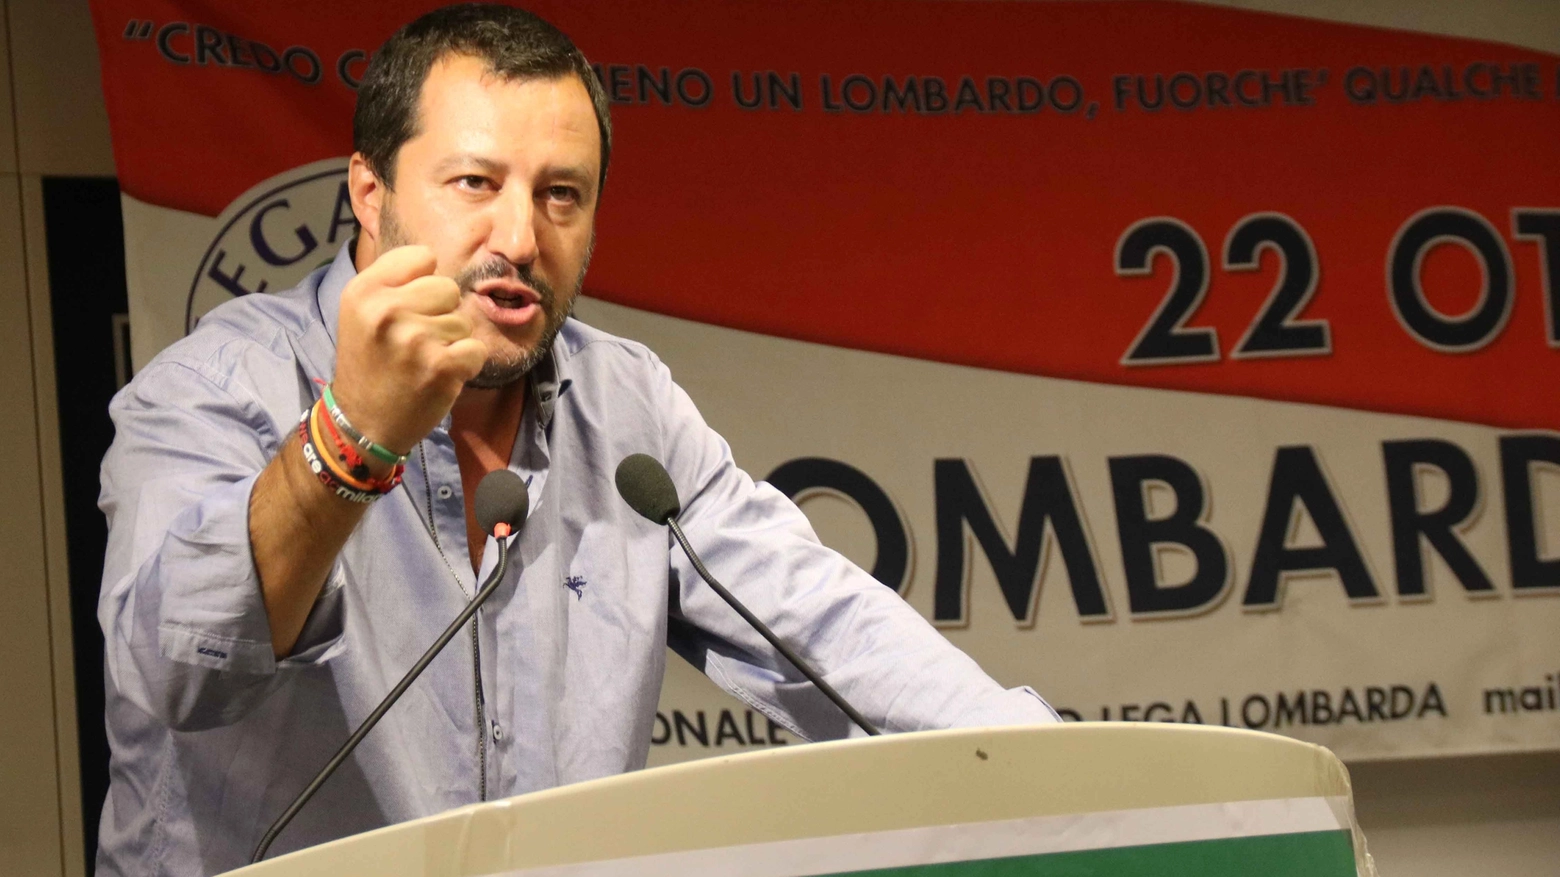 Il leader della Lega Nord ha tenuto un incontro in vista del referendum per l'autonomia di Regione Lombardia